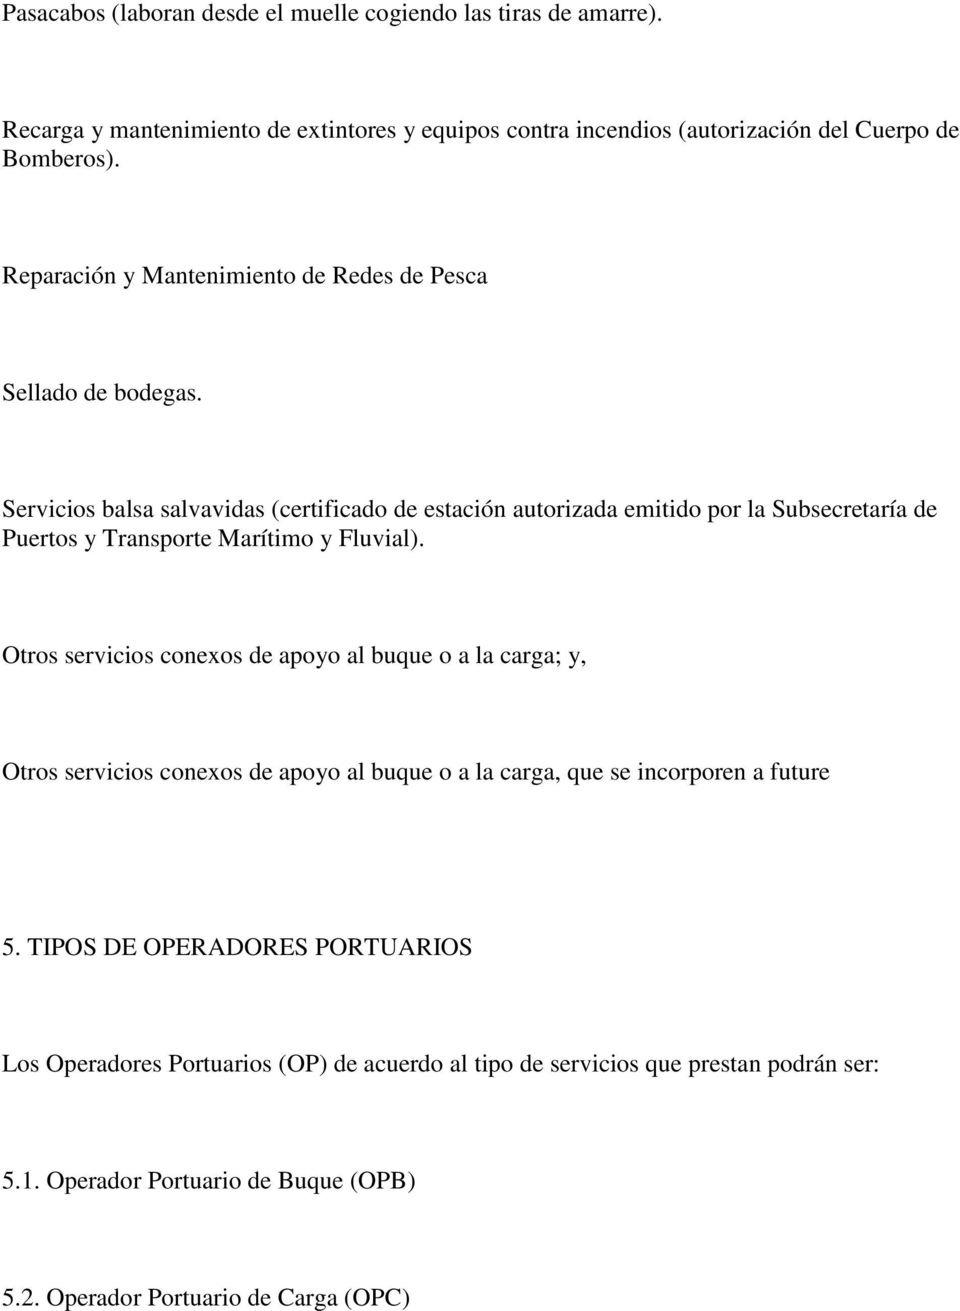 Servicios balsa salvavidas (certificado de estación autorizada emitido por la Subsecretaría de Puertos y Transporte Marítimo y Fluvial).